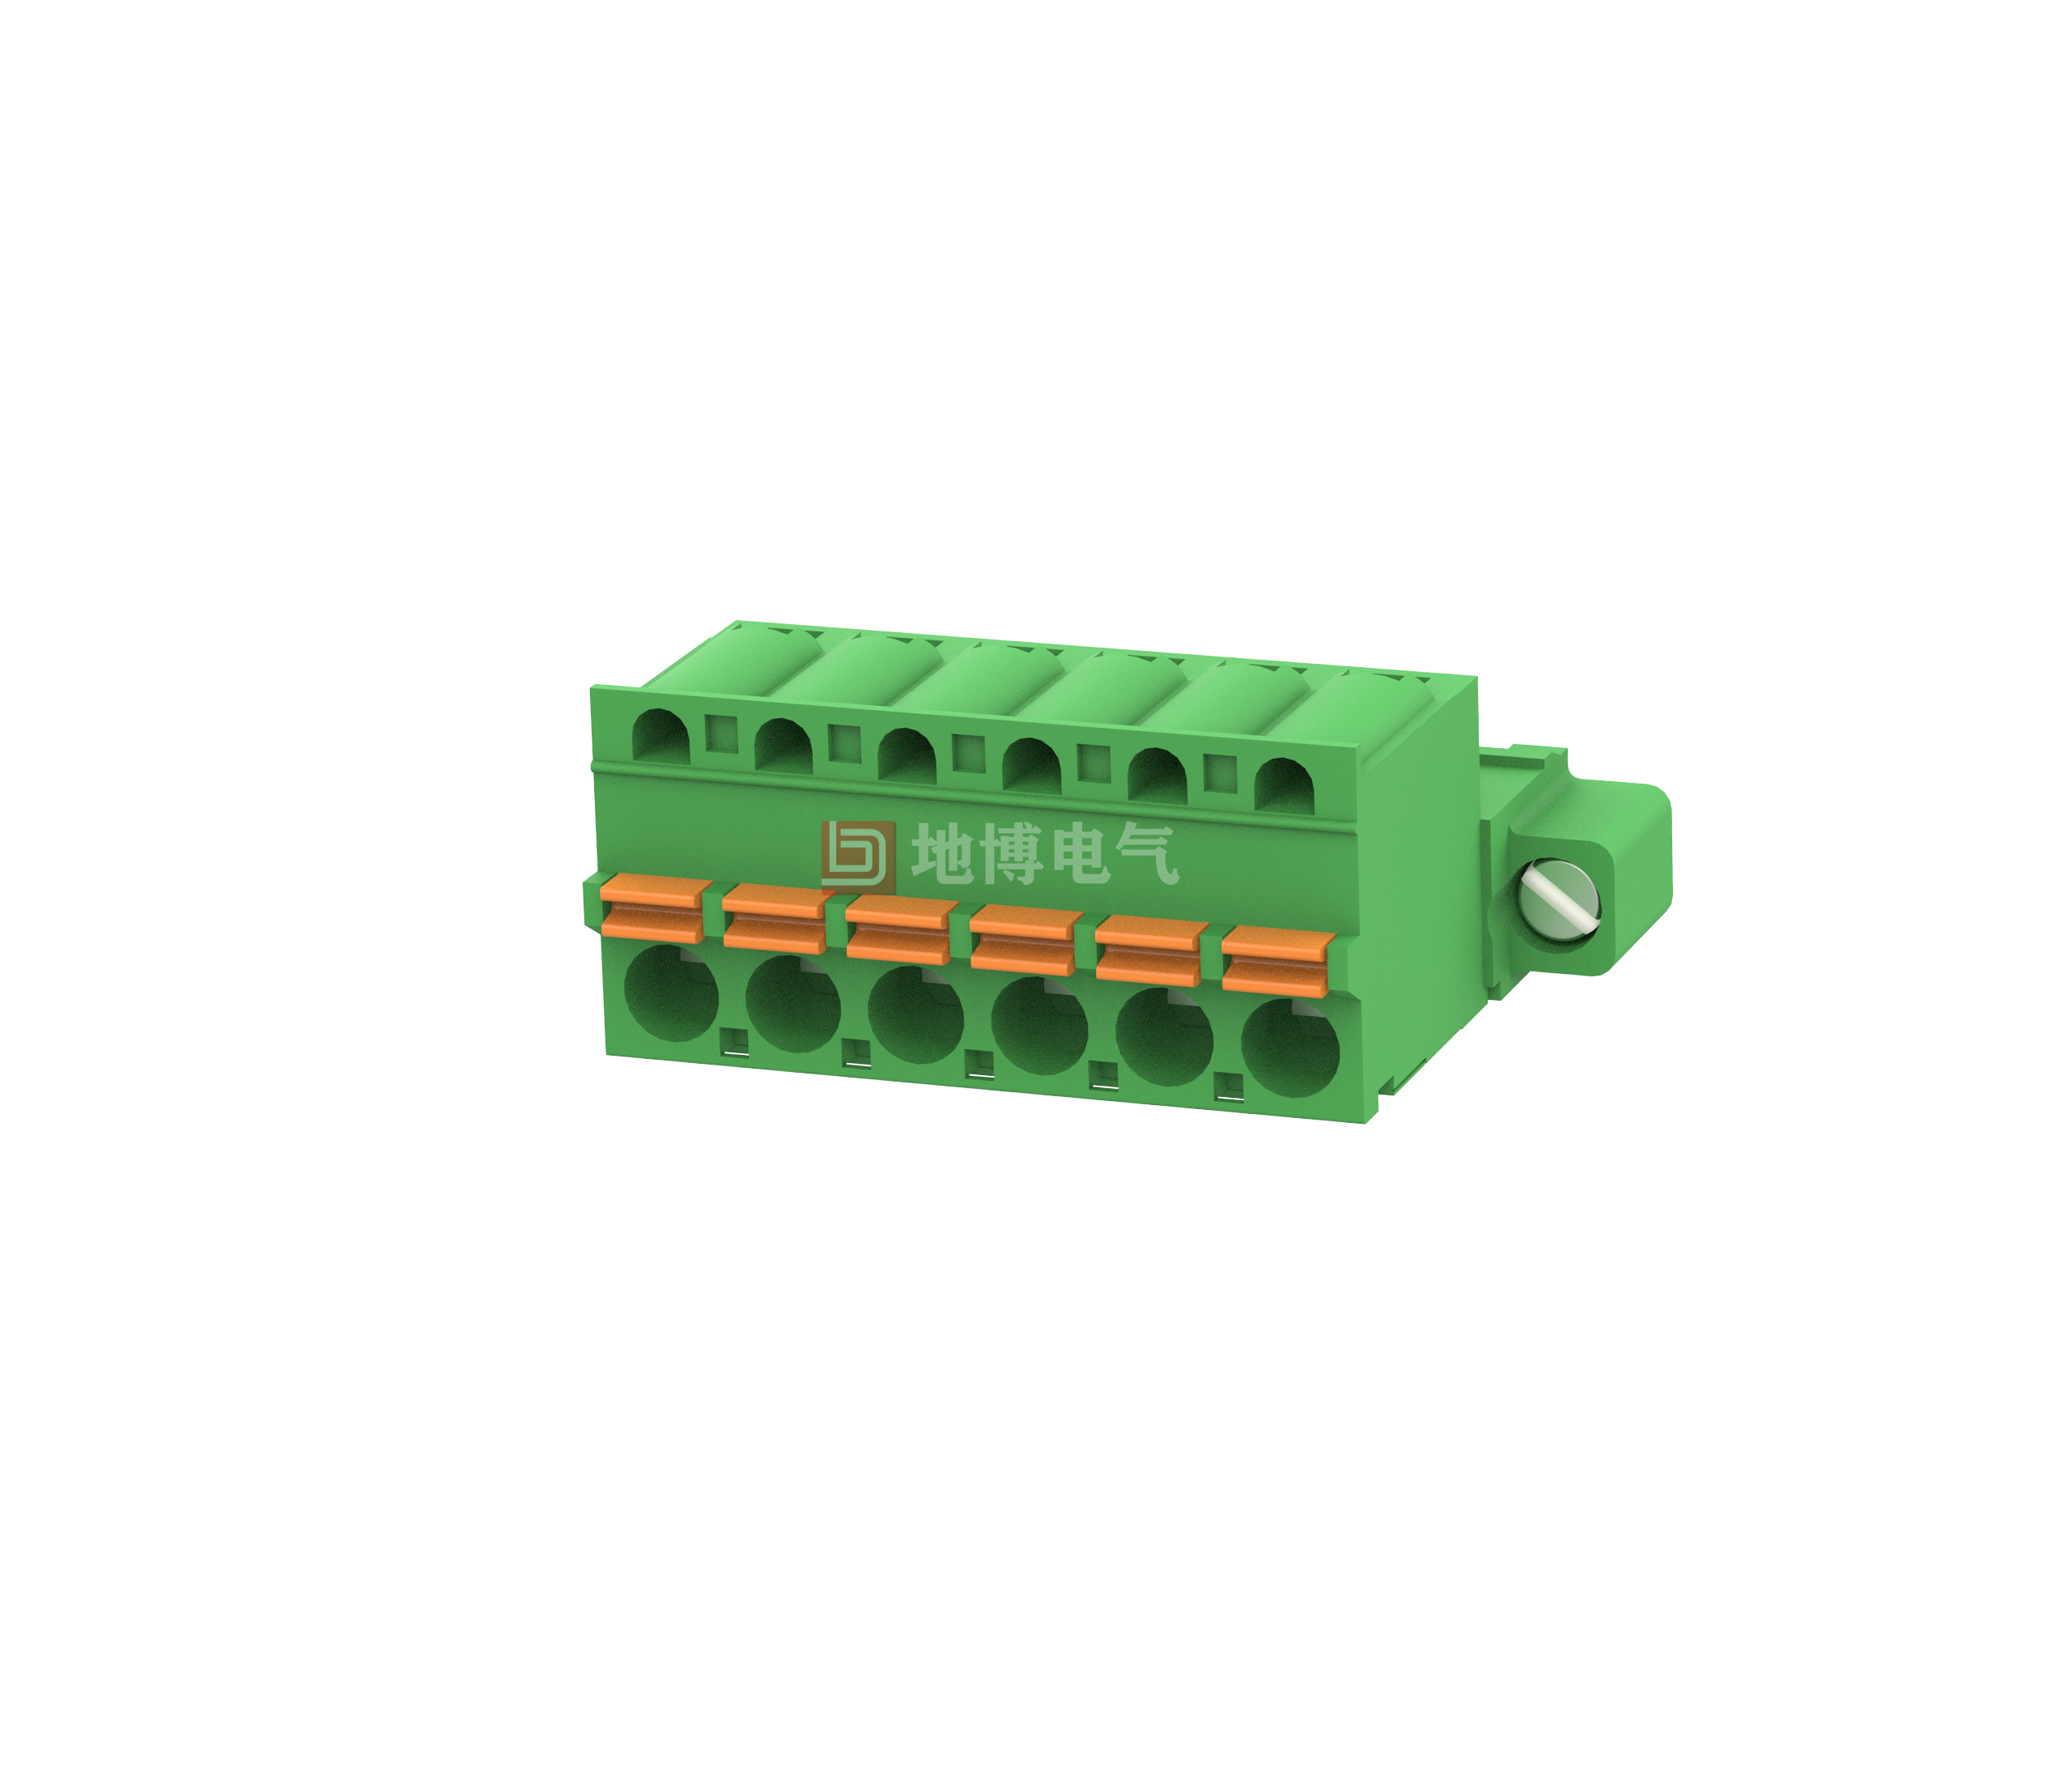 PCB plug-in connector DB2EKDRM-5.08